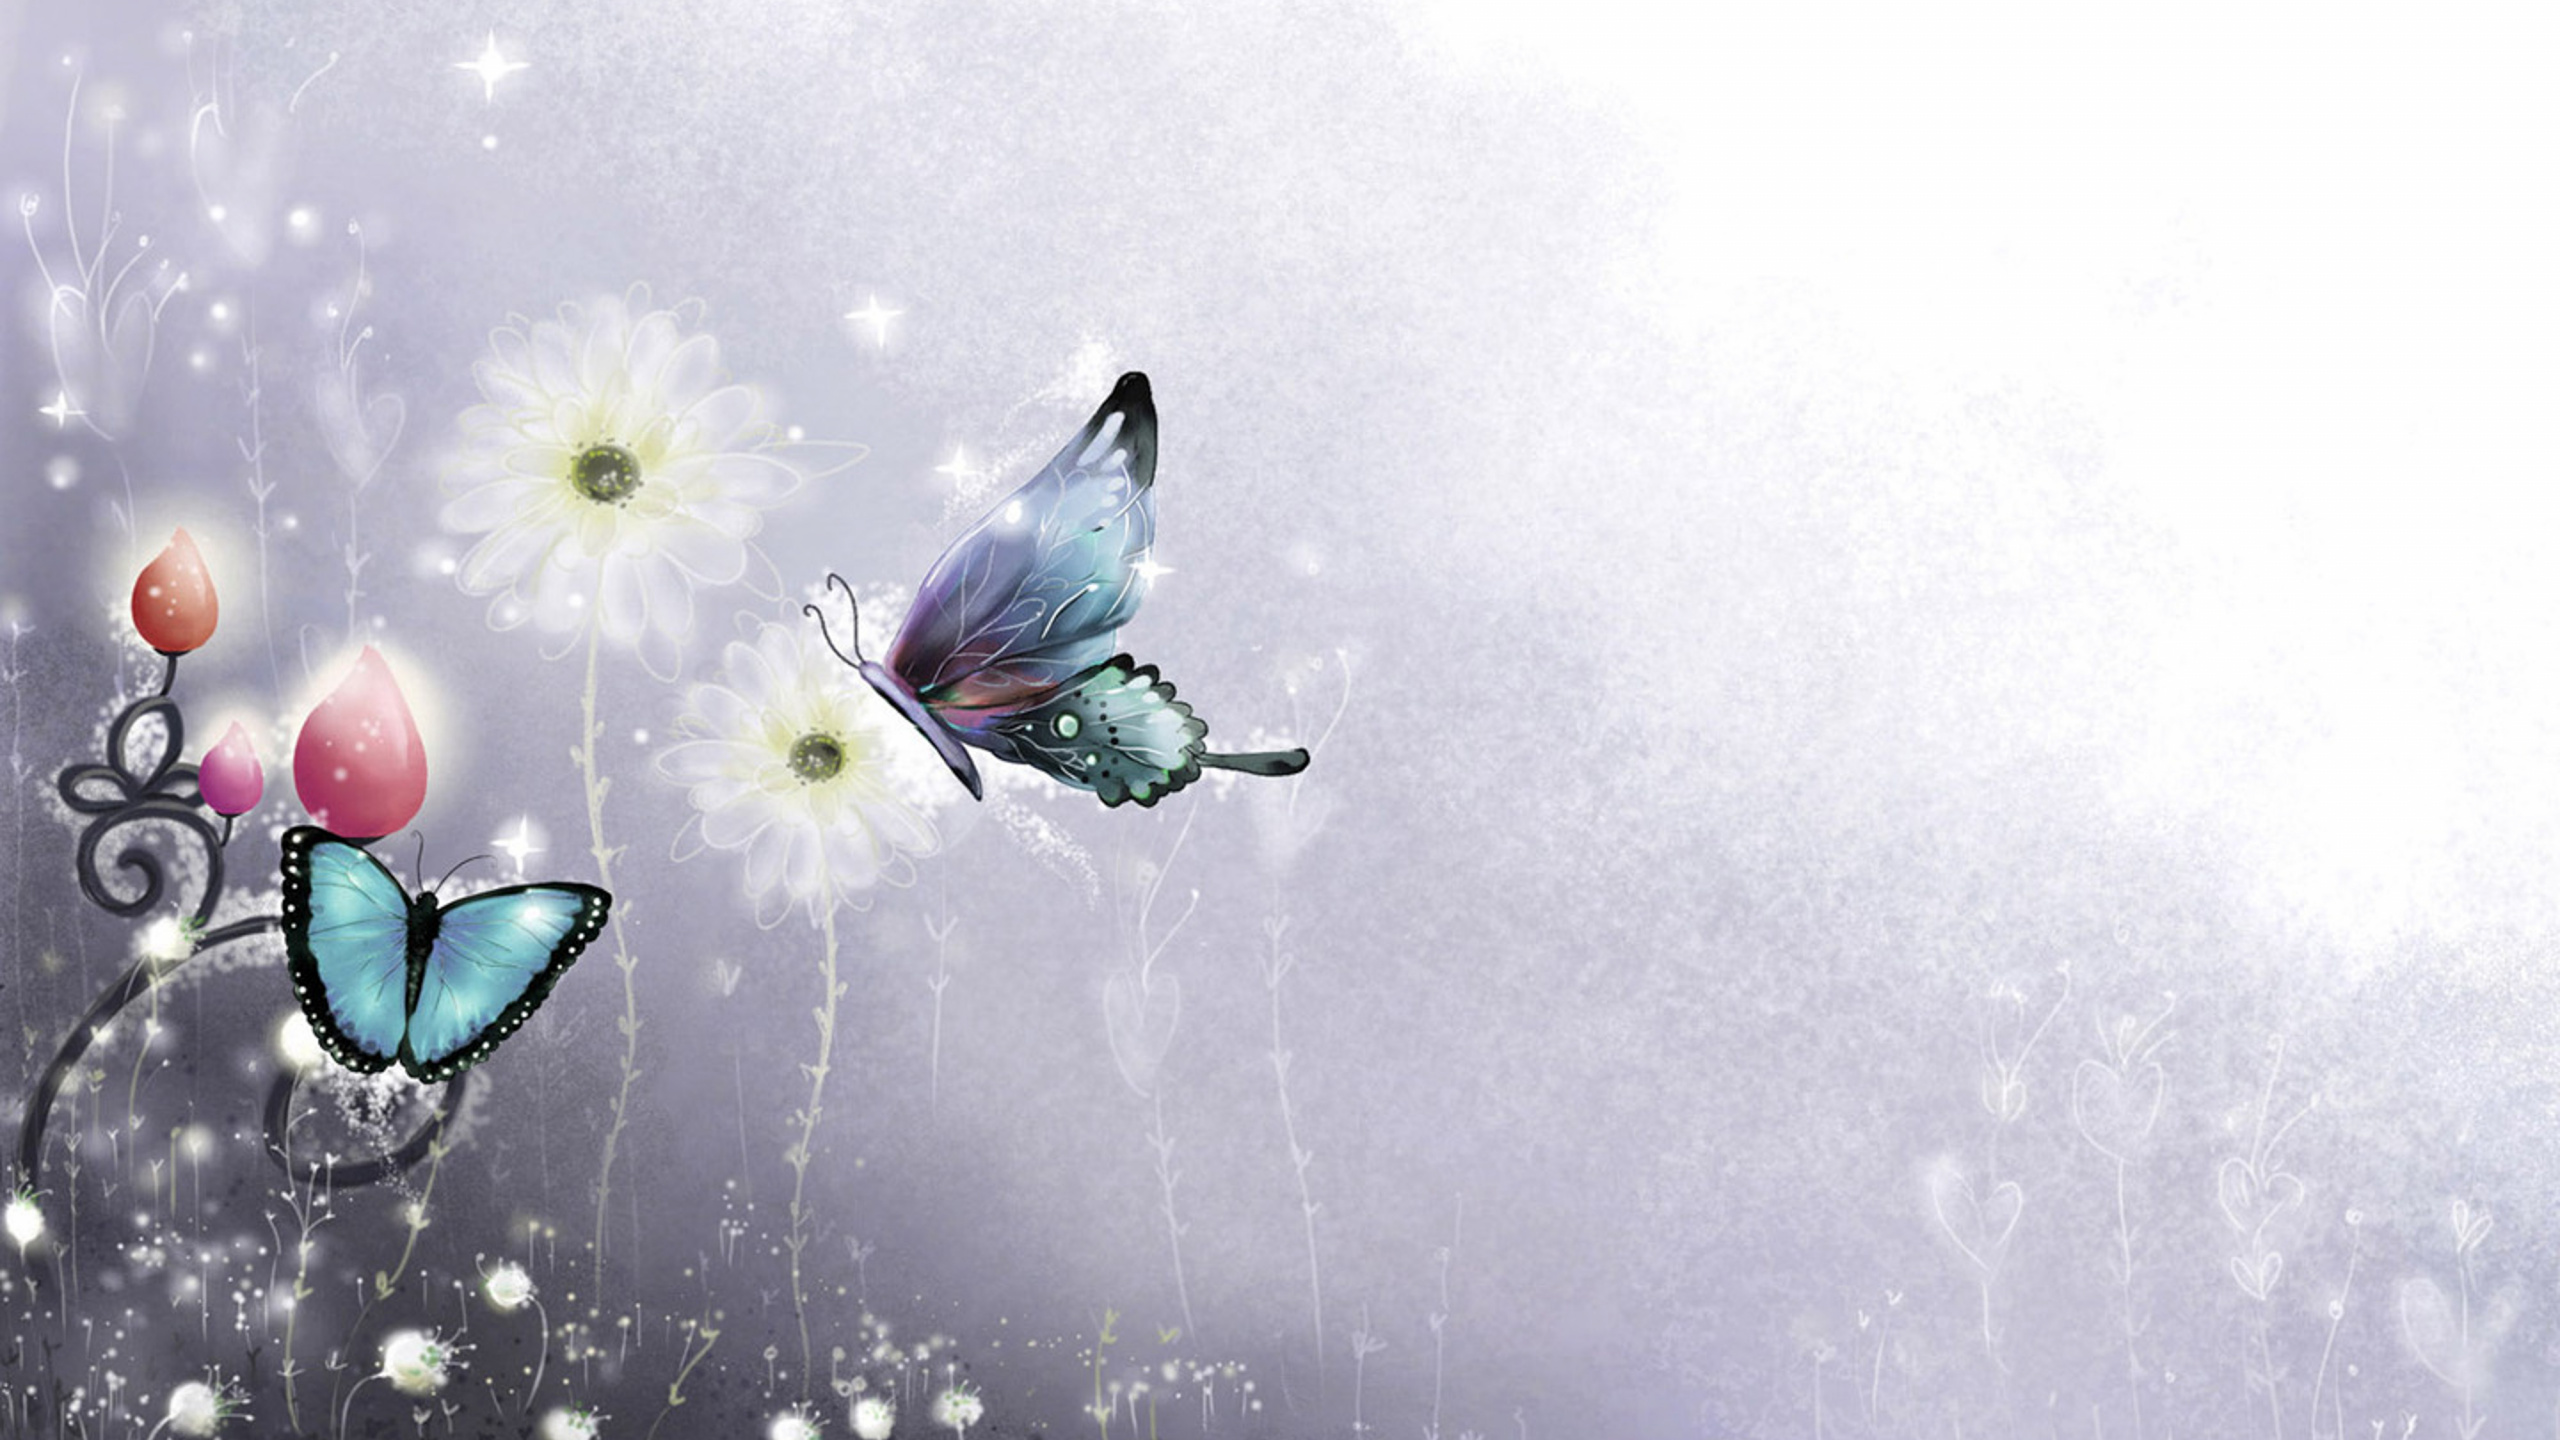 飞蛾和蝴蝶, 图形设计, 翼, 昆虫, 天空 壁纸 2560x1440 允许